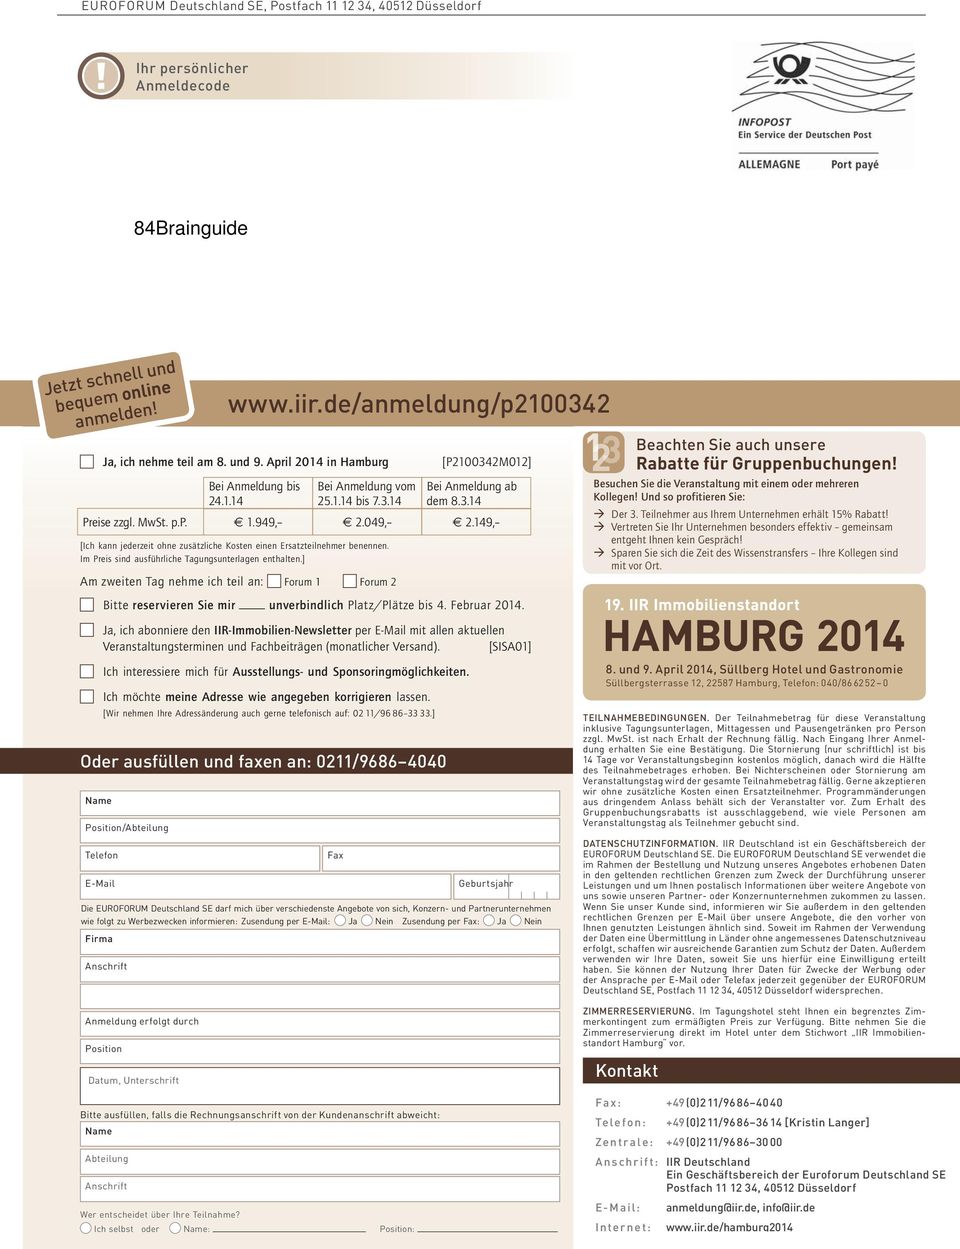 April 2014 in Hamburg Fax Geburtsjahr Die EUROFORUM Deutschland SE darf mich über verschiedenste Angebote von sich, Konzern- und Partnerunternehmen wie folgt zu Werbezwecken informieren: Zusendung